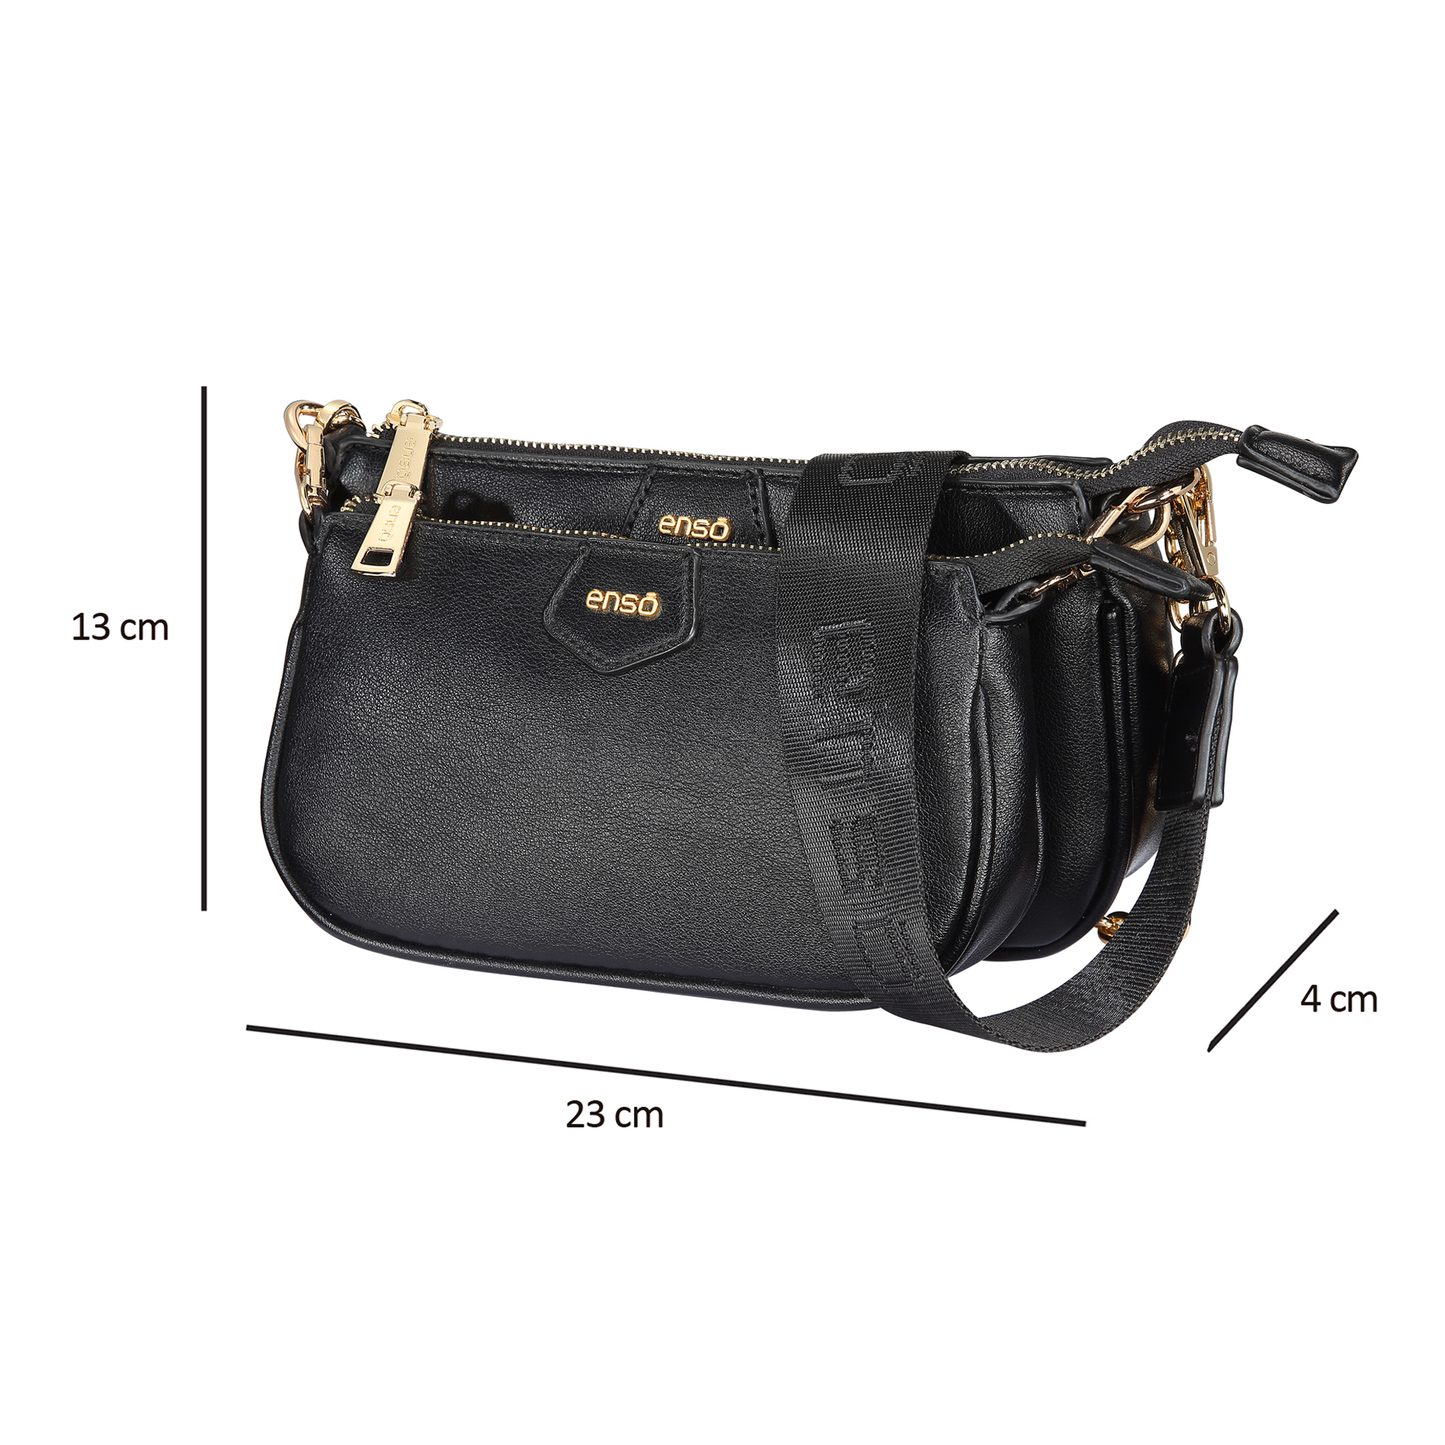 Bandolera Enso Black Bags EB305CBB Tipo Urbana Para Mujer